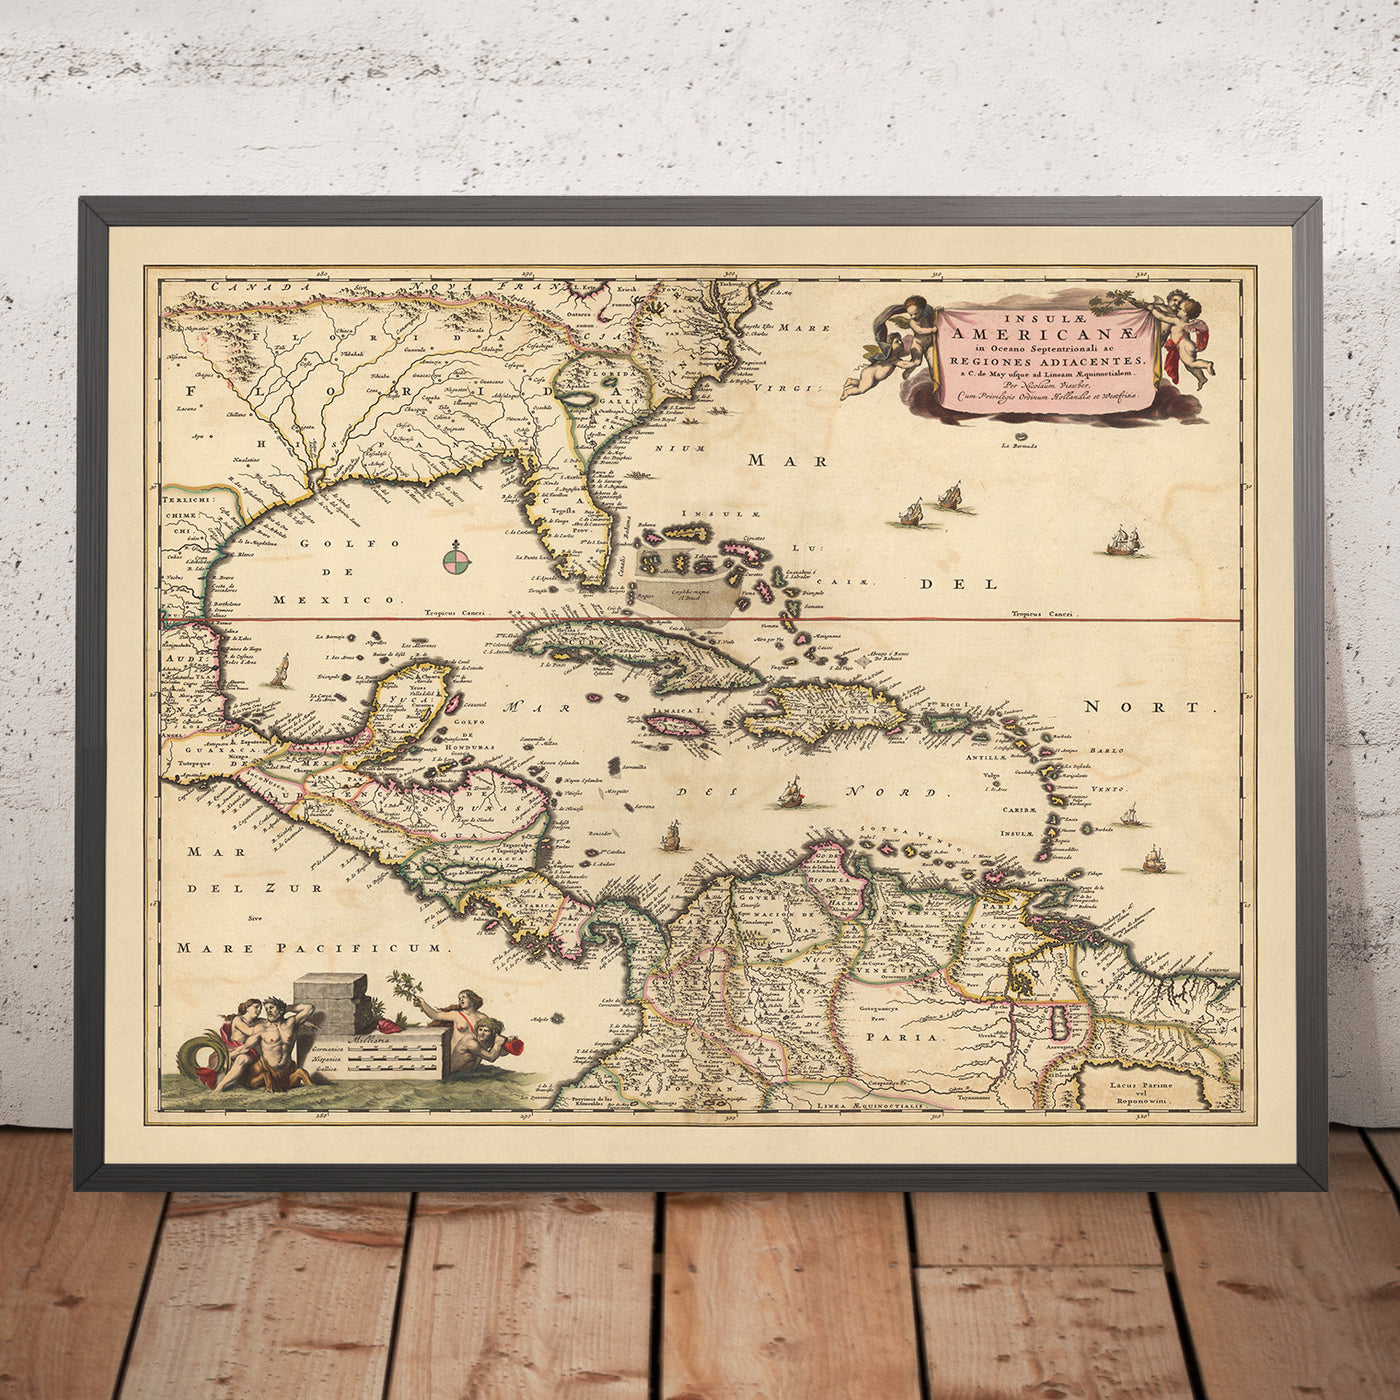 Ancienne carte des Caraïbes, de la Floride et de l'Amérique centrale par Visscher, 1690 : Louisiane, Texas, Géorgie, Yucatan, Triangle des Bermudes